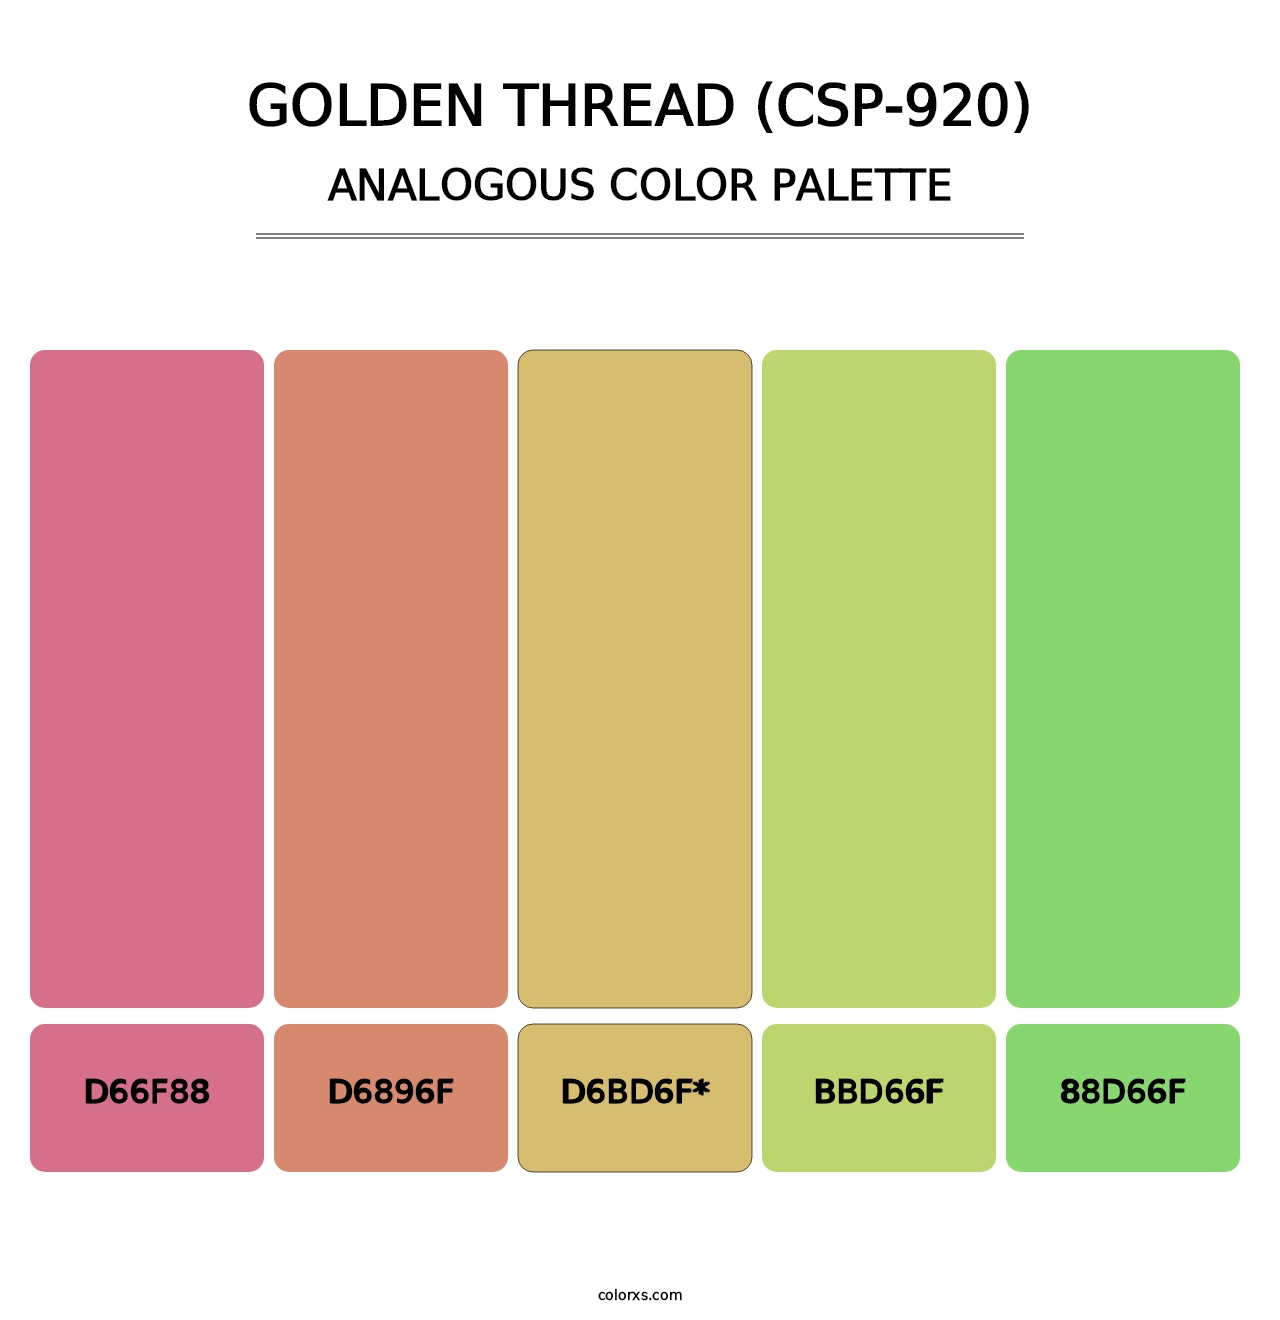 Golden Thread (CSP-920) - Analogous Color Palette